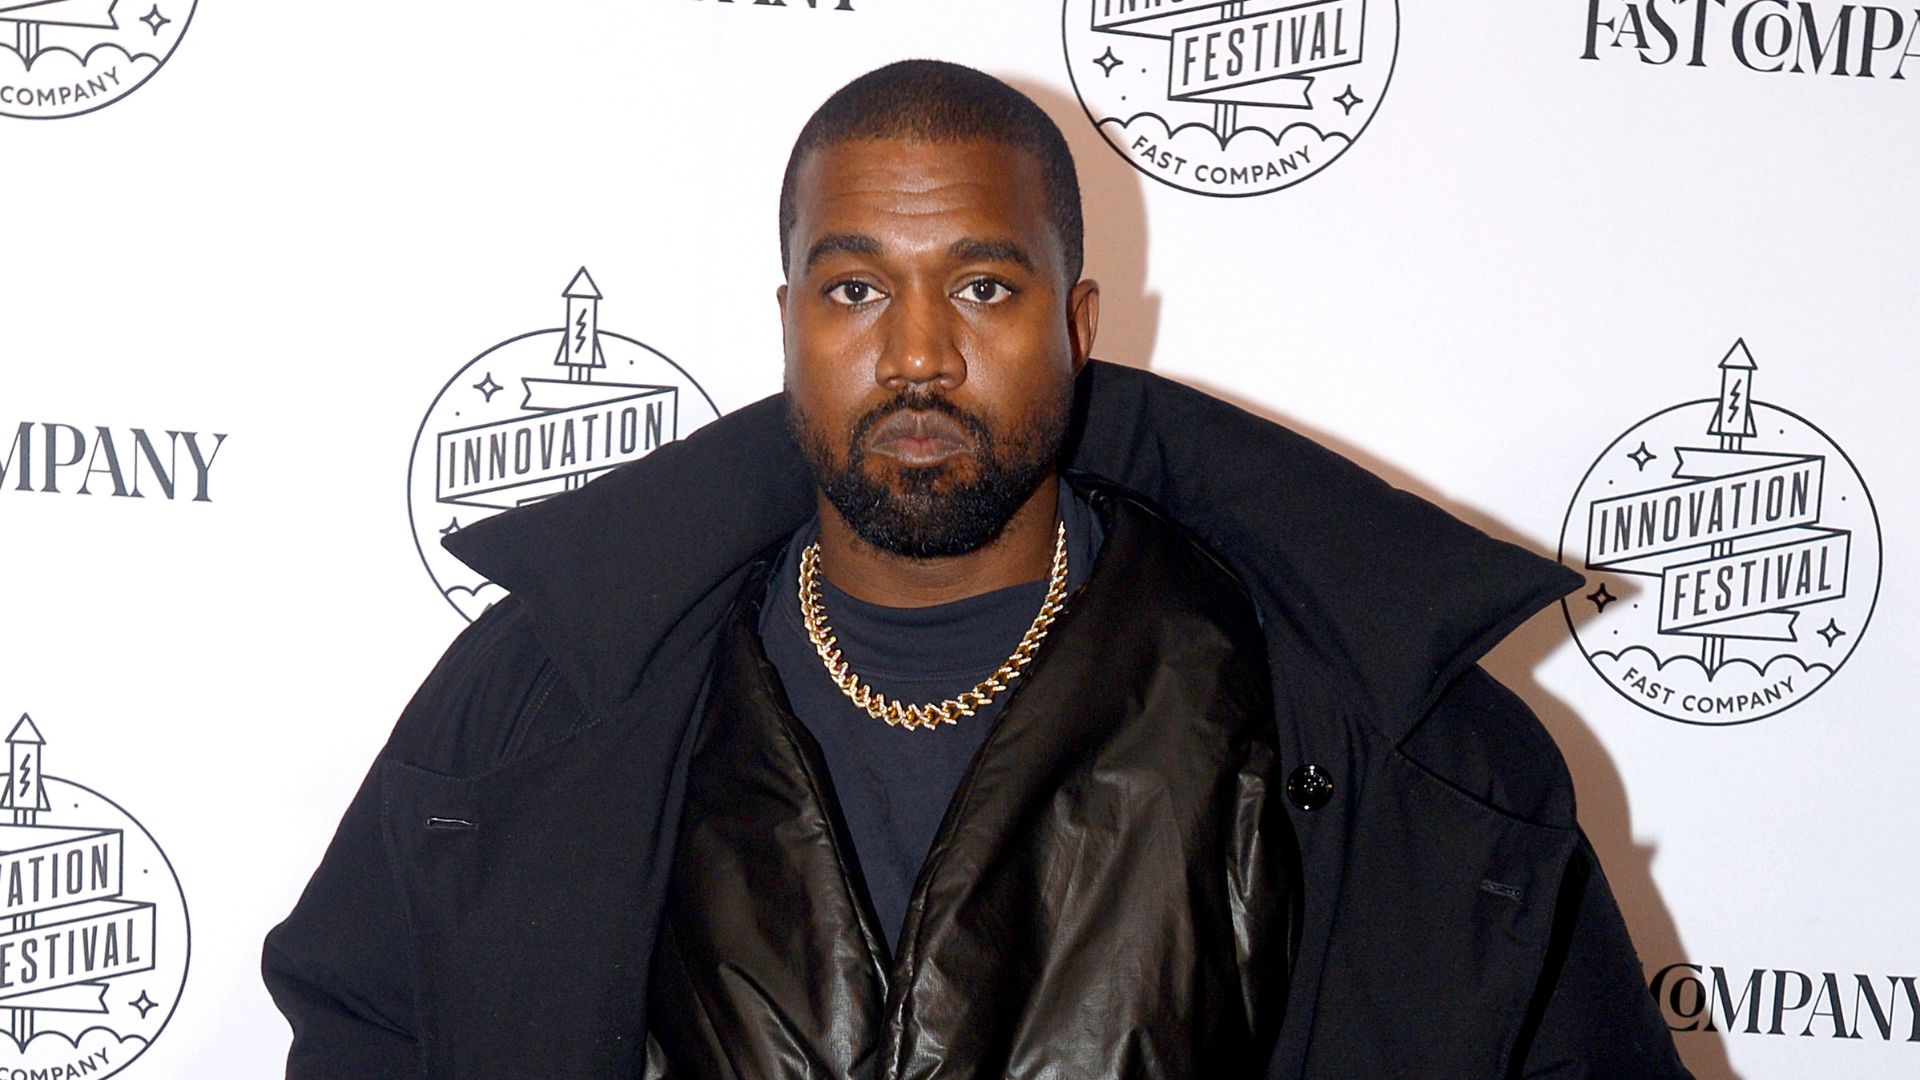 Kanye West pagou pelo silêncio de ex-funcionário após flagra de discurso comprometedor